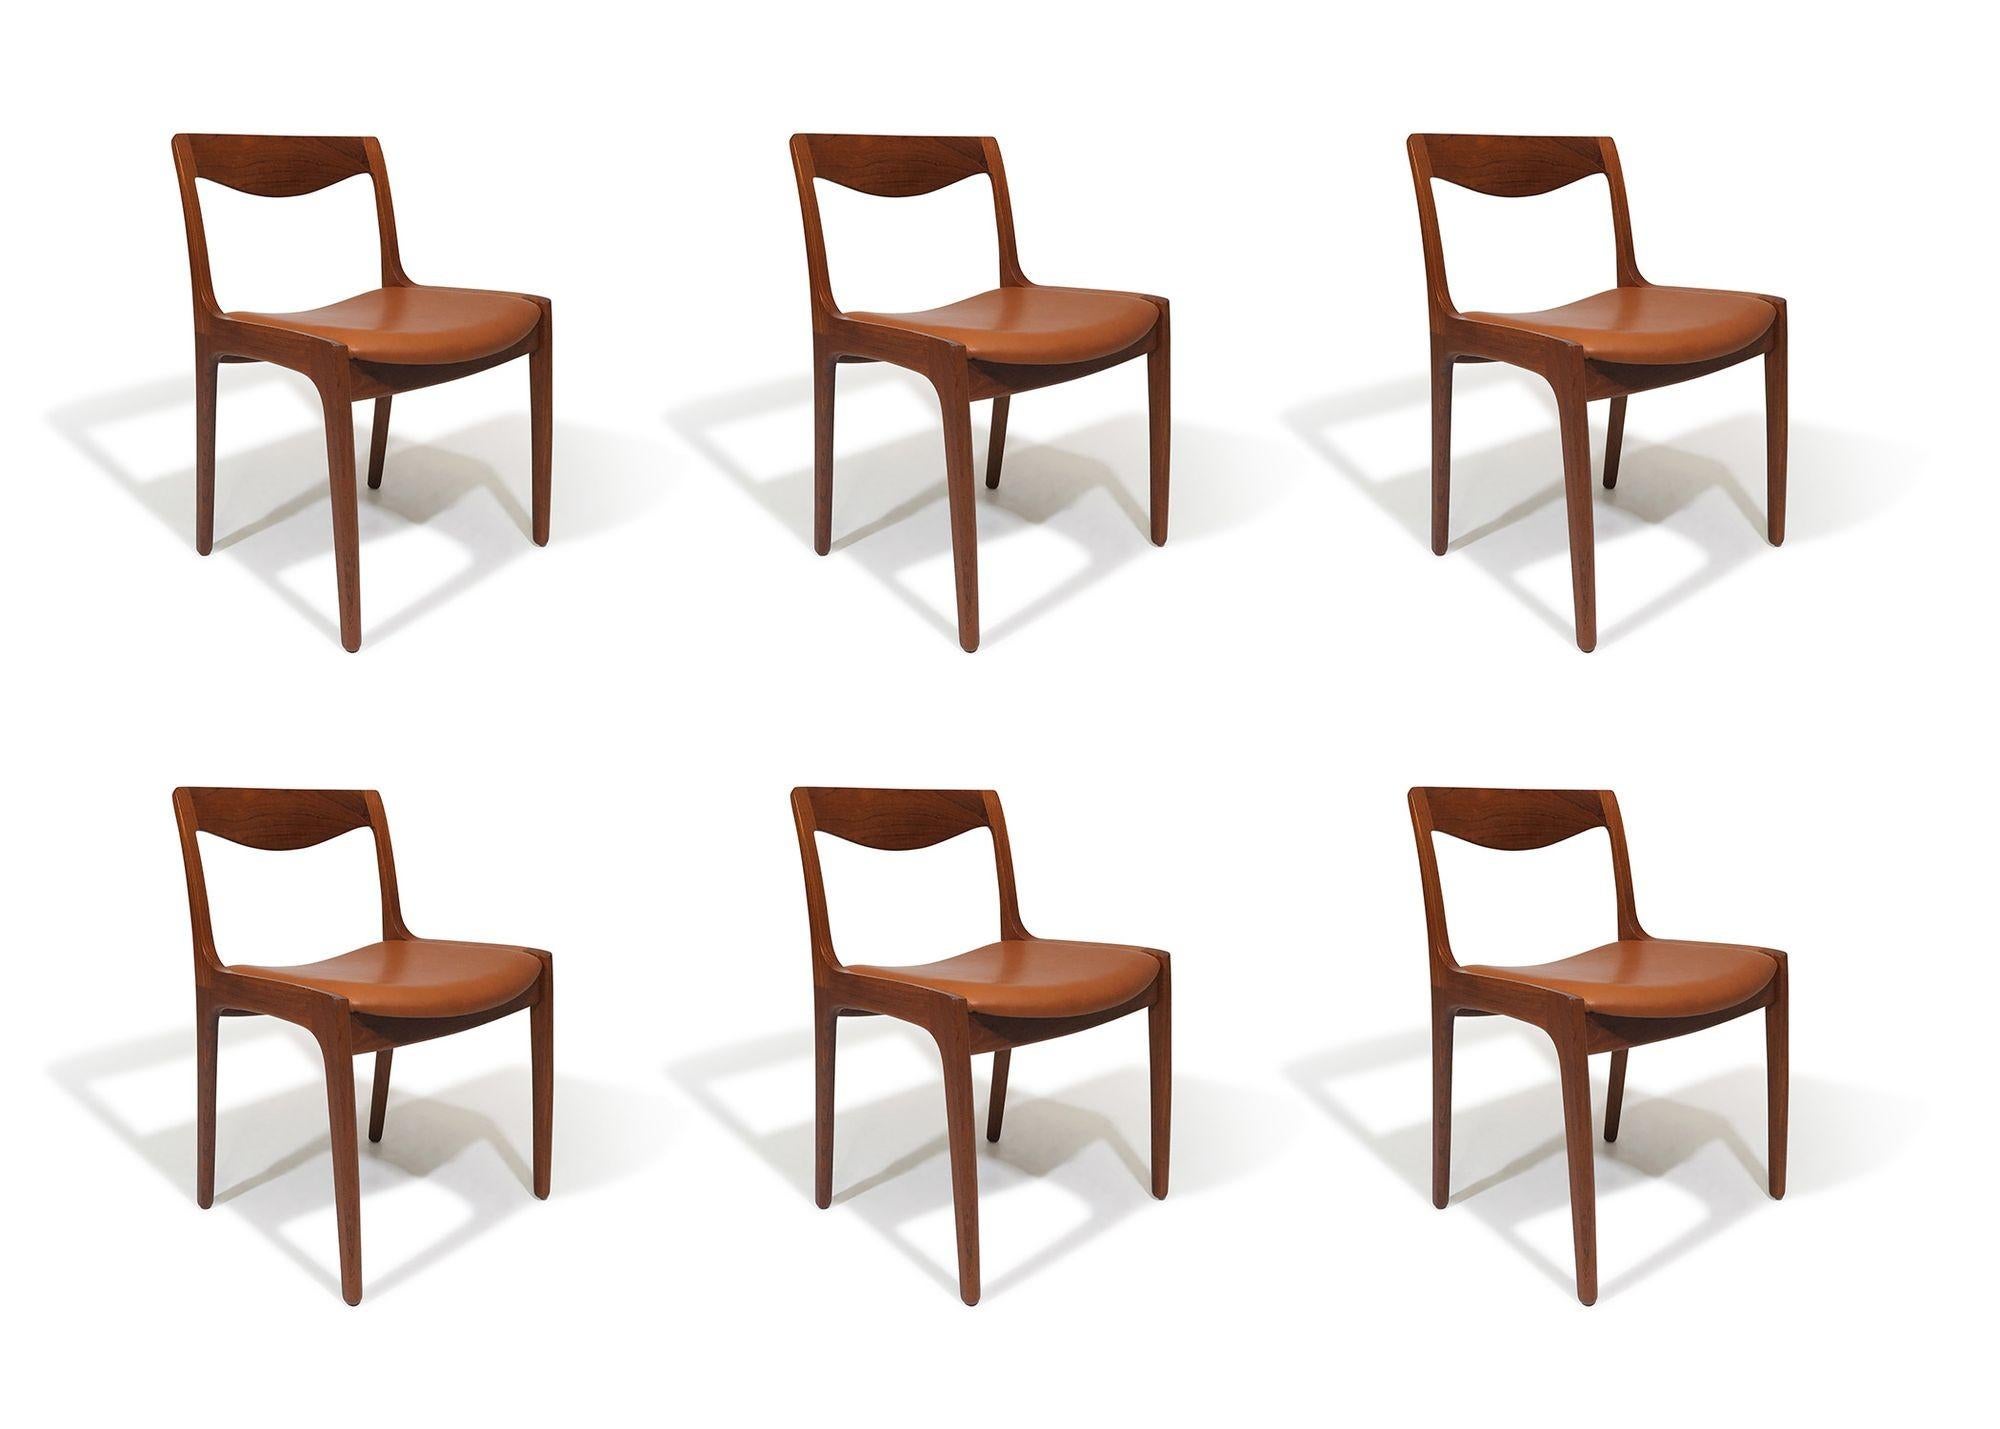 Dänische Esszimmerstühle aus der Jahrhundertmitte, entworfen von Vilhelm Wohlert für Poul Jeppesen Møbelfabrik, Dänemark, 1956. Die Stühle verfügen über fein gearbeitete Rückenlehnen aus massivem Teakholz auf Teakholzrahmen mit freiliegenden